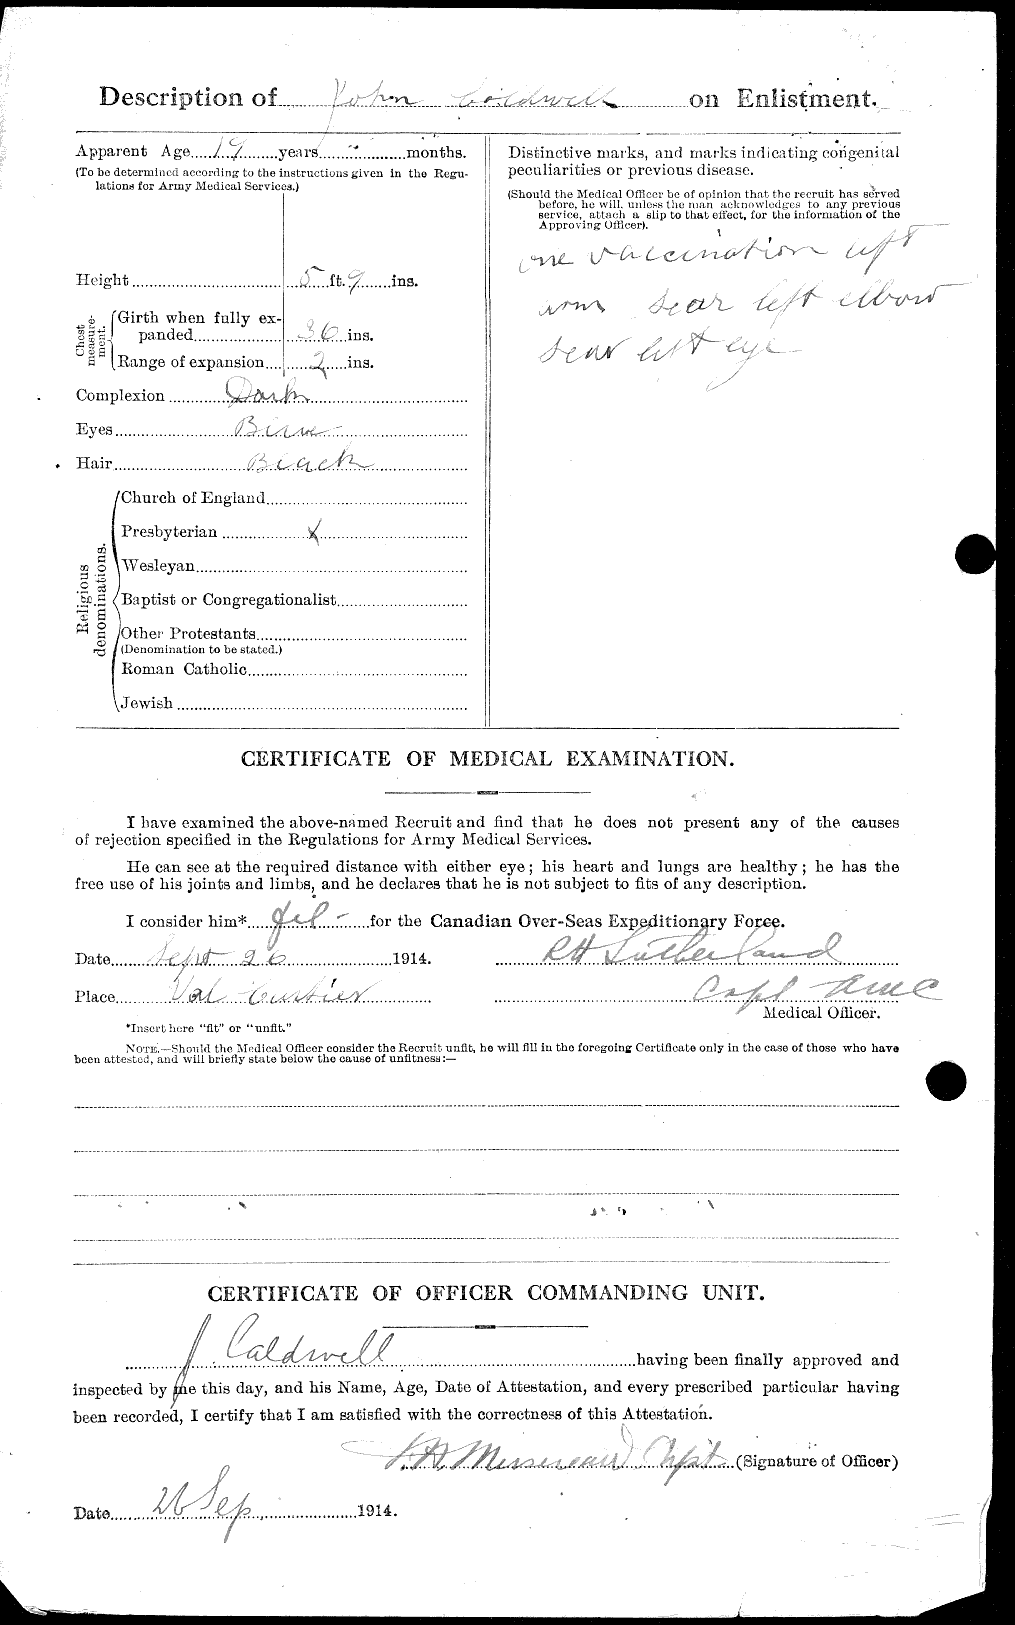 Dossiers du Personnel de la Première Guerre mondiale - CEC 001071b